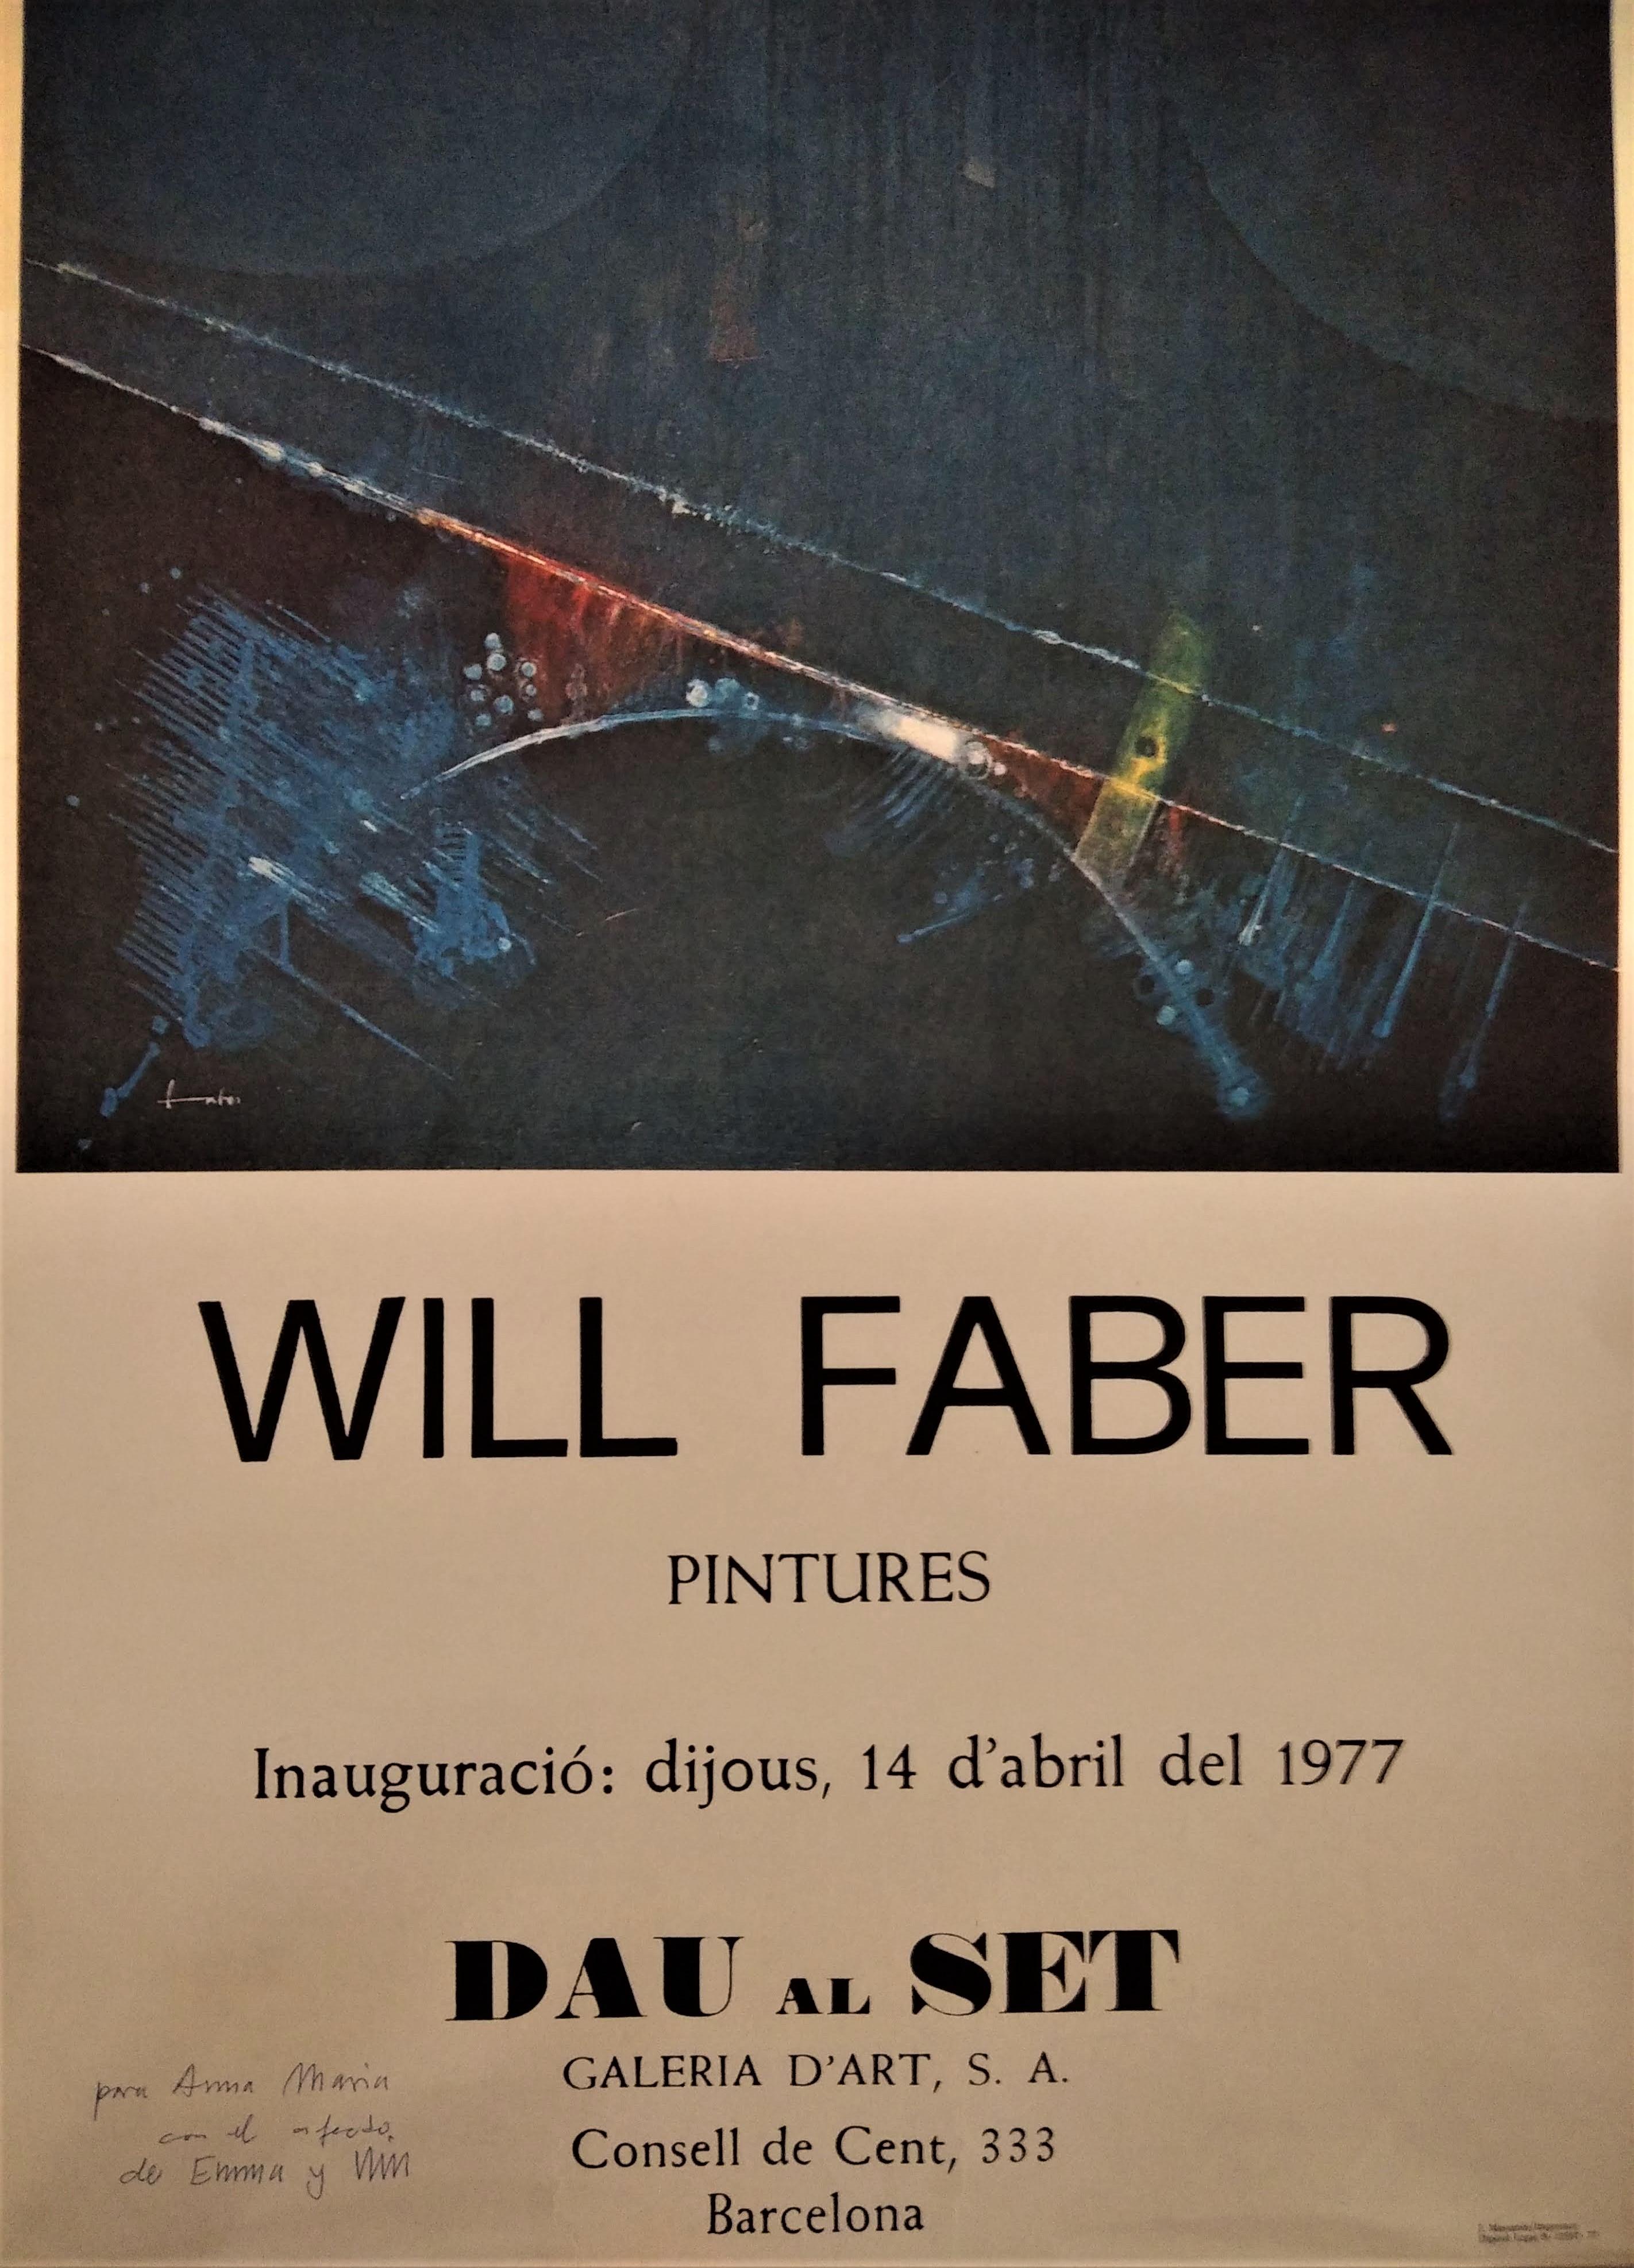 Will Faber - Pintures - Galeria d'art Dau al Set - April 1977